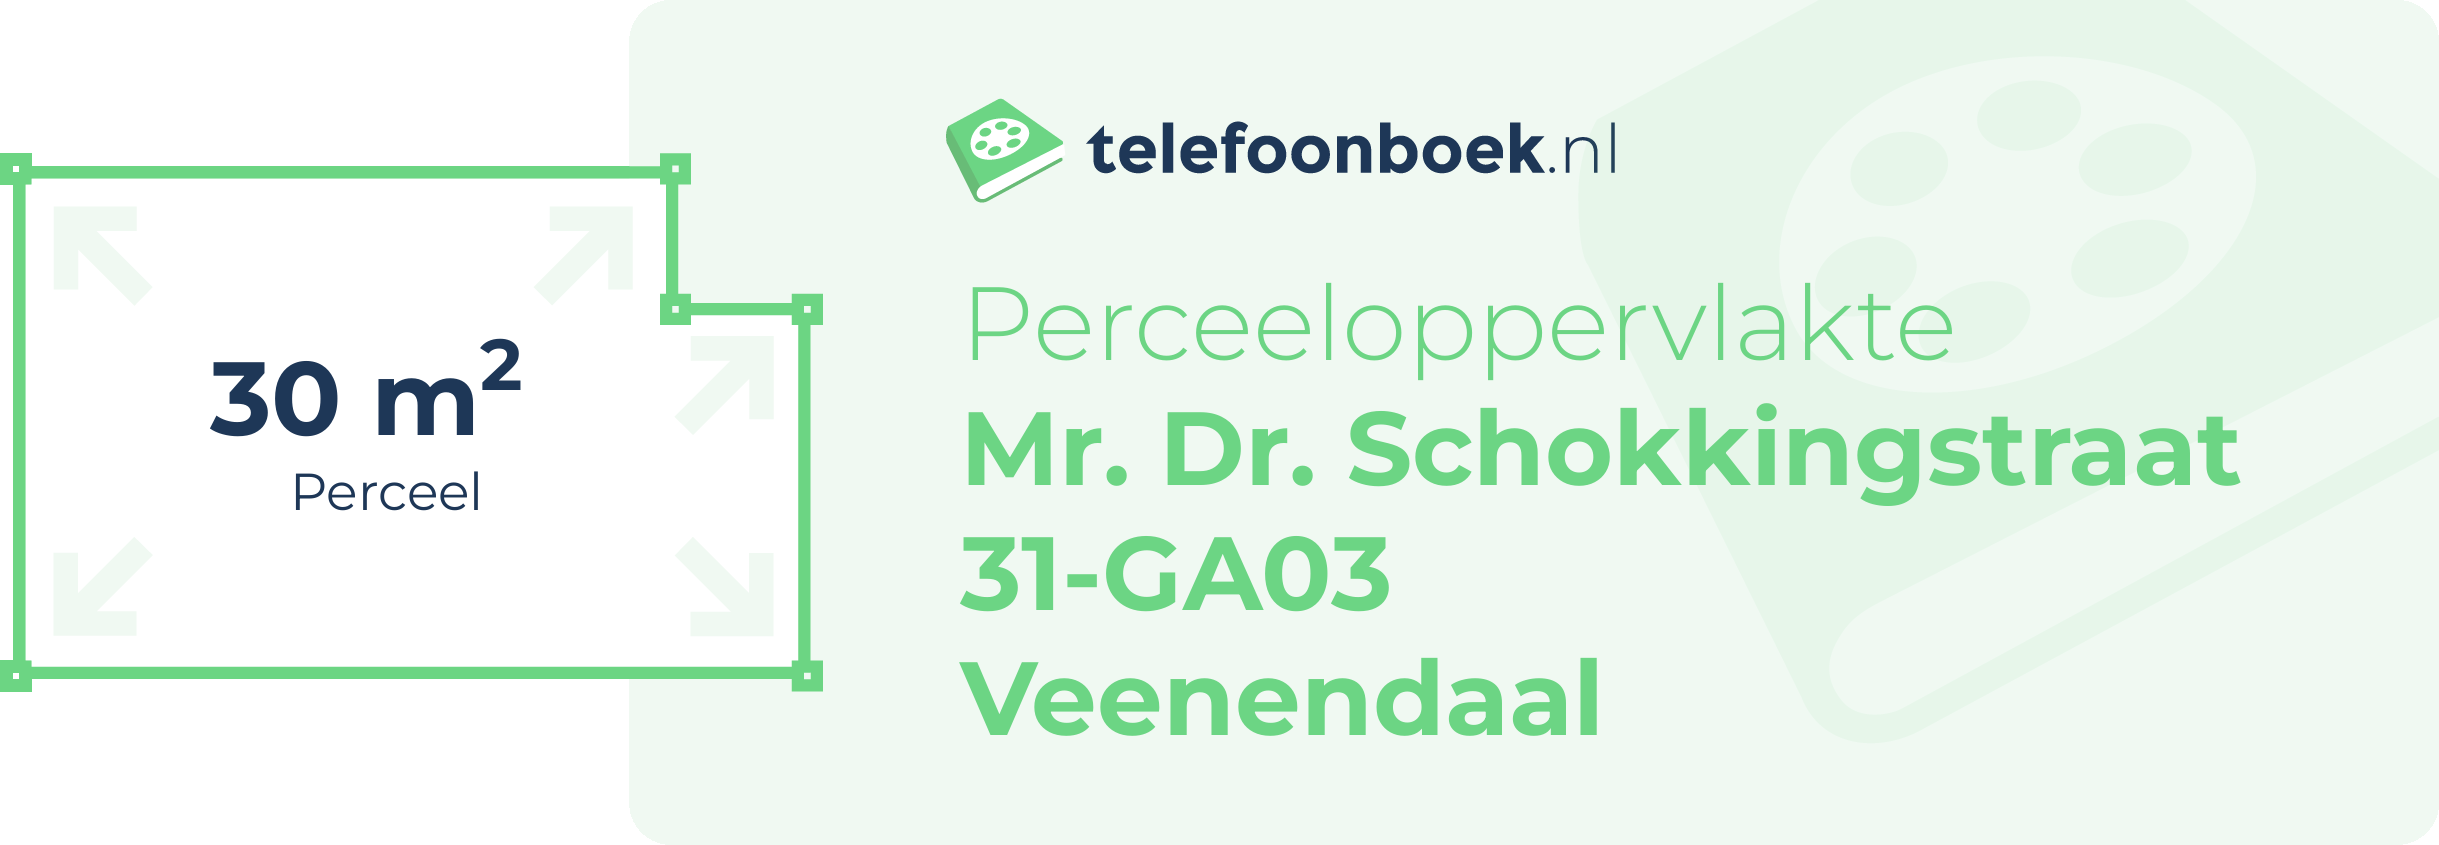 Perceeloppervlakte Mr. Dr. Schokkingstraat 31-GA03 Veenendaal